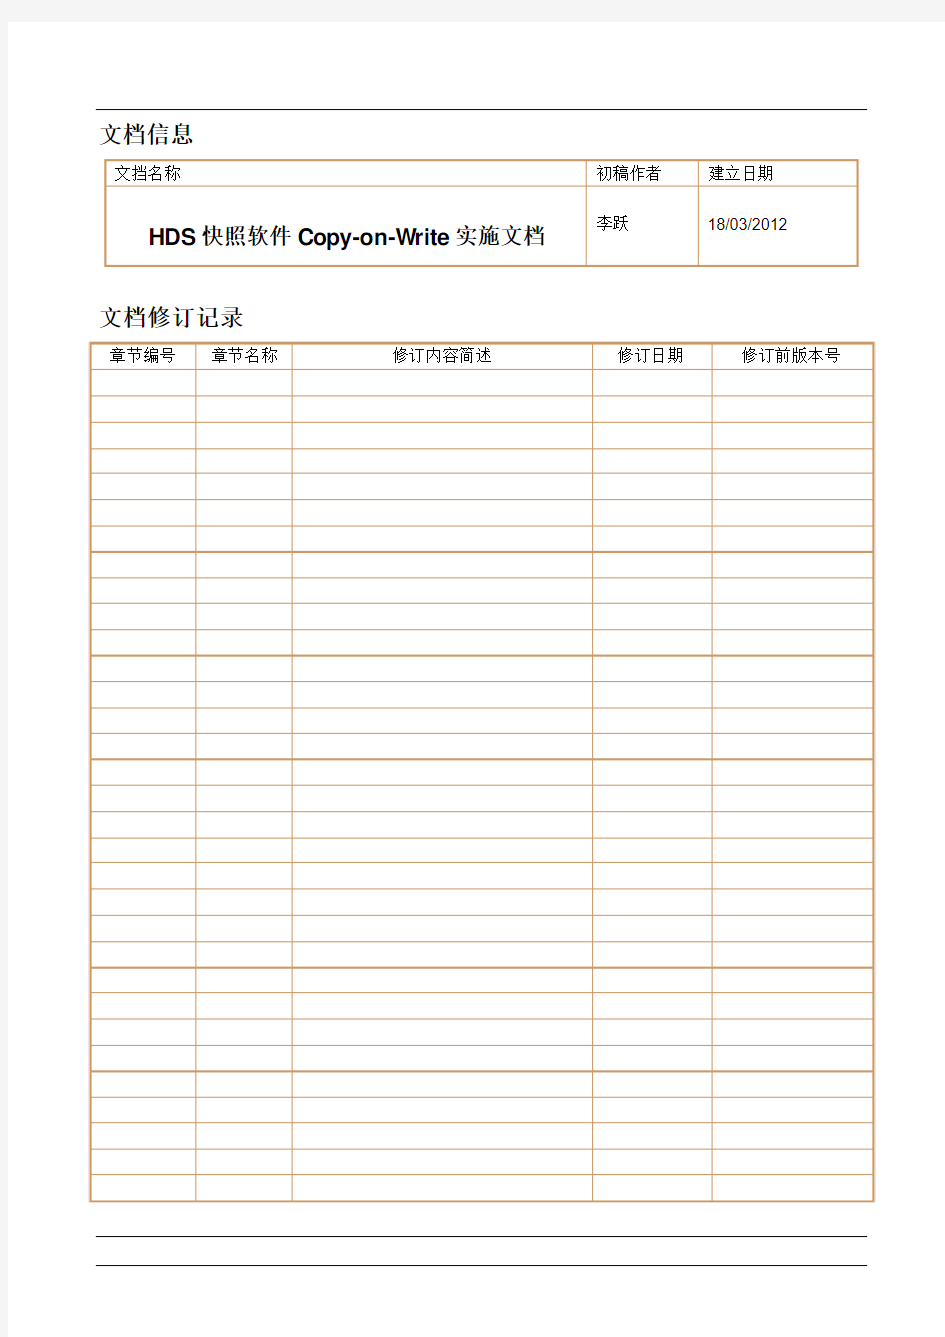 HDS快照软件Copy-on-Write实施文档